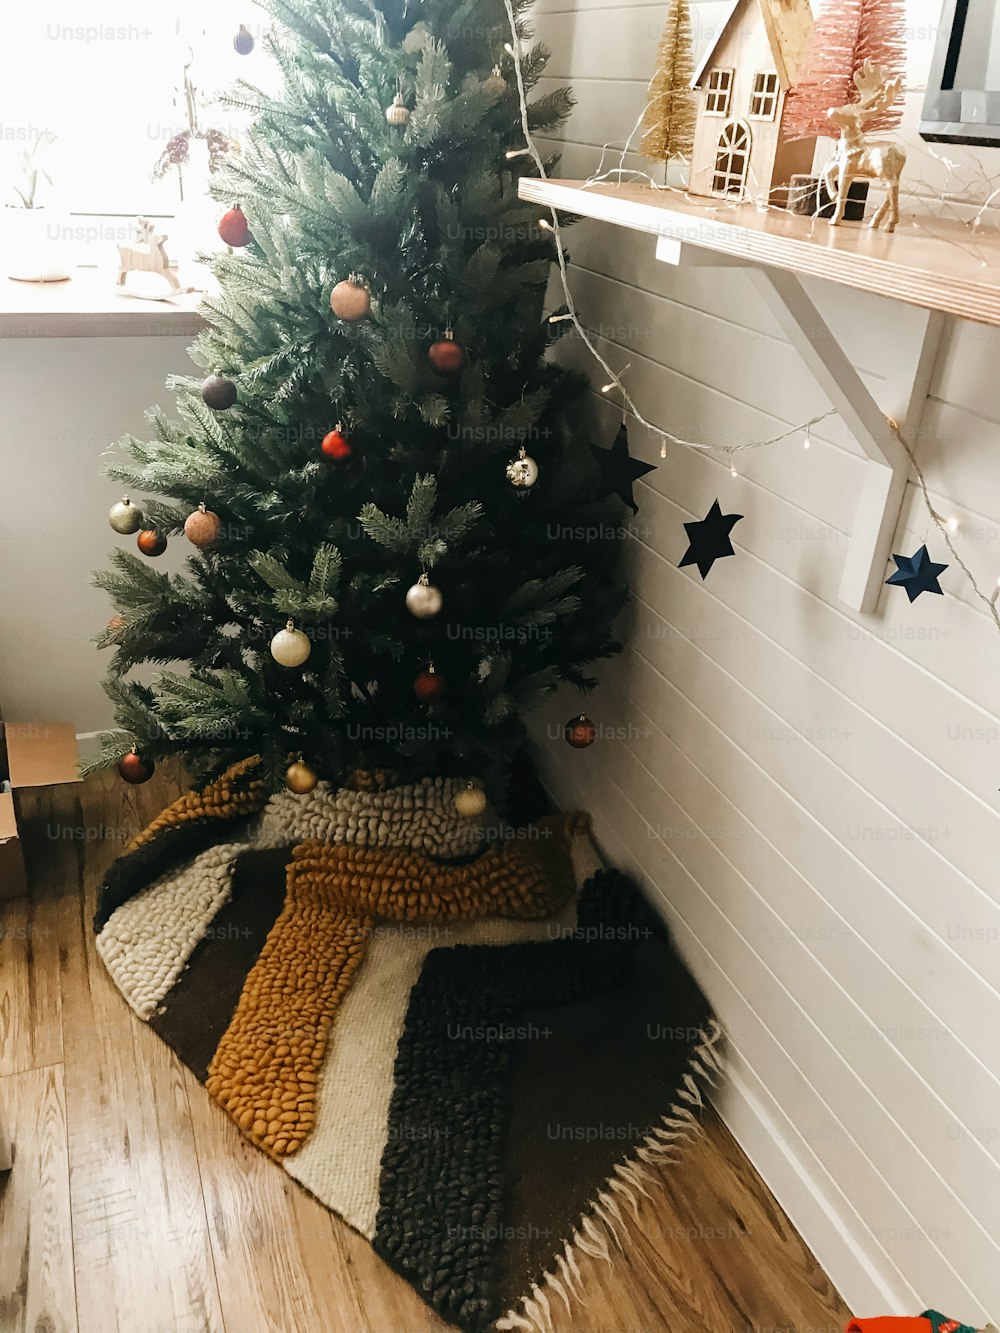 축제로 장식된 보호 방에 빨간색과 금색 싸구려가 있는 전통적인 크리스마스 트리. 겨울 방학을 위해 집을 준비합니다. 즐거운 휴일과 메리 크리스마스!